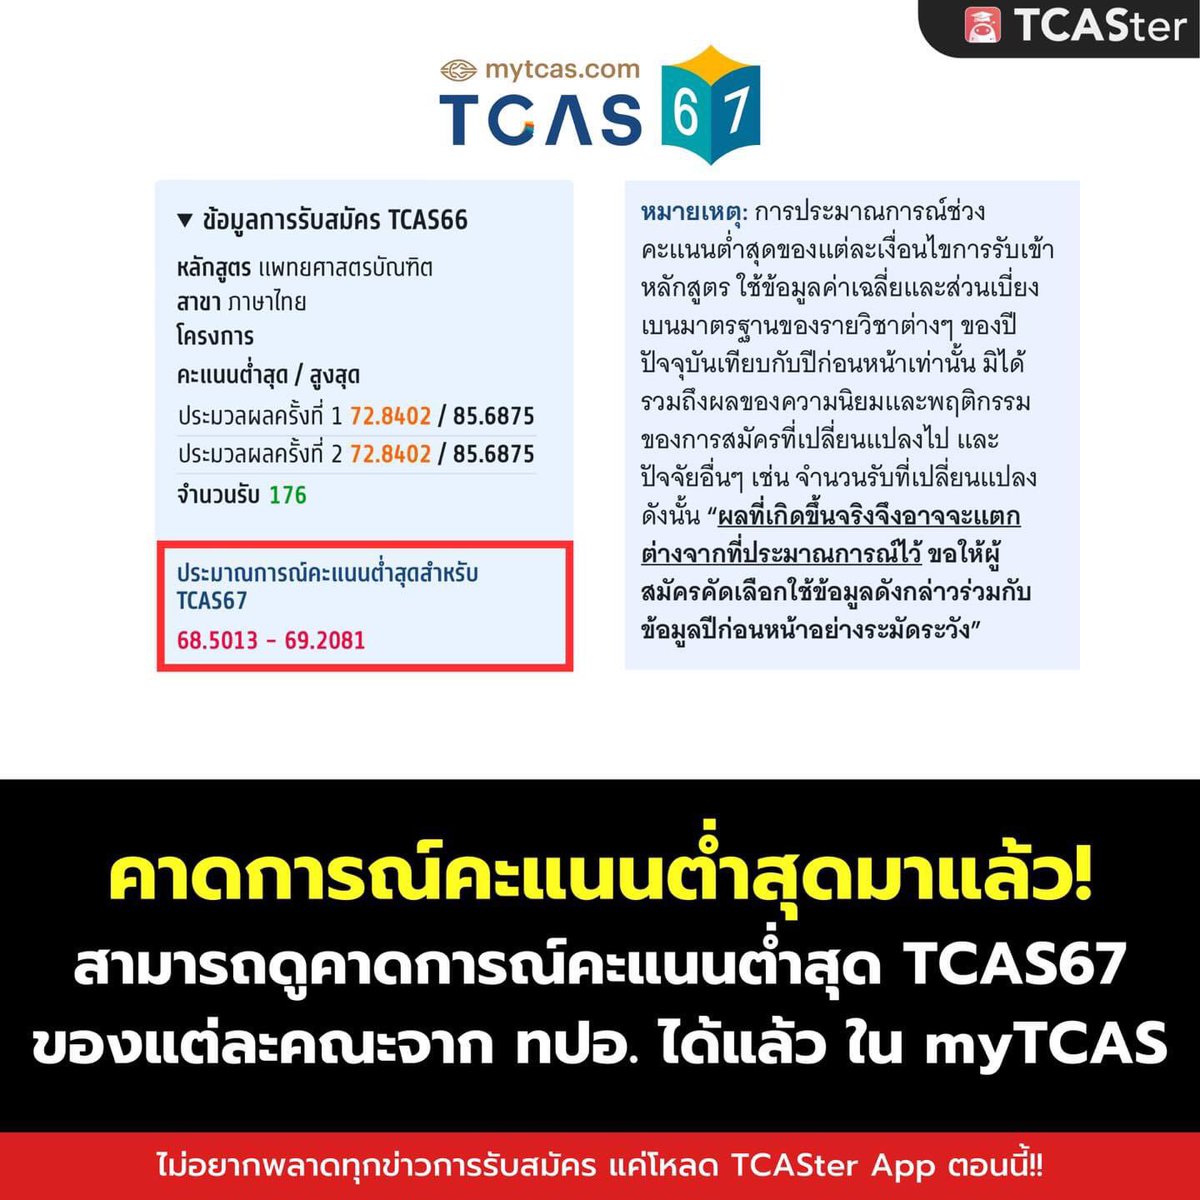 คาดการณ์คะแนนต่ำสุด #TCAS67 จากทปอ. มาแล้ว #DEK67 เข้าไปเช็กกันได้เลยที่ 👉 mytcas.com . ปล. บางคณะที่ใช้เป็นคะแนน T-Score อาจจะยังไม่มีข้อมูลน้า พี่ทีแนะนำให้รอติดตามข่าวสารจากทปอ. ไปก่อนน้า💖 . #TCASter #Mytcas #admission